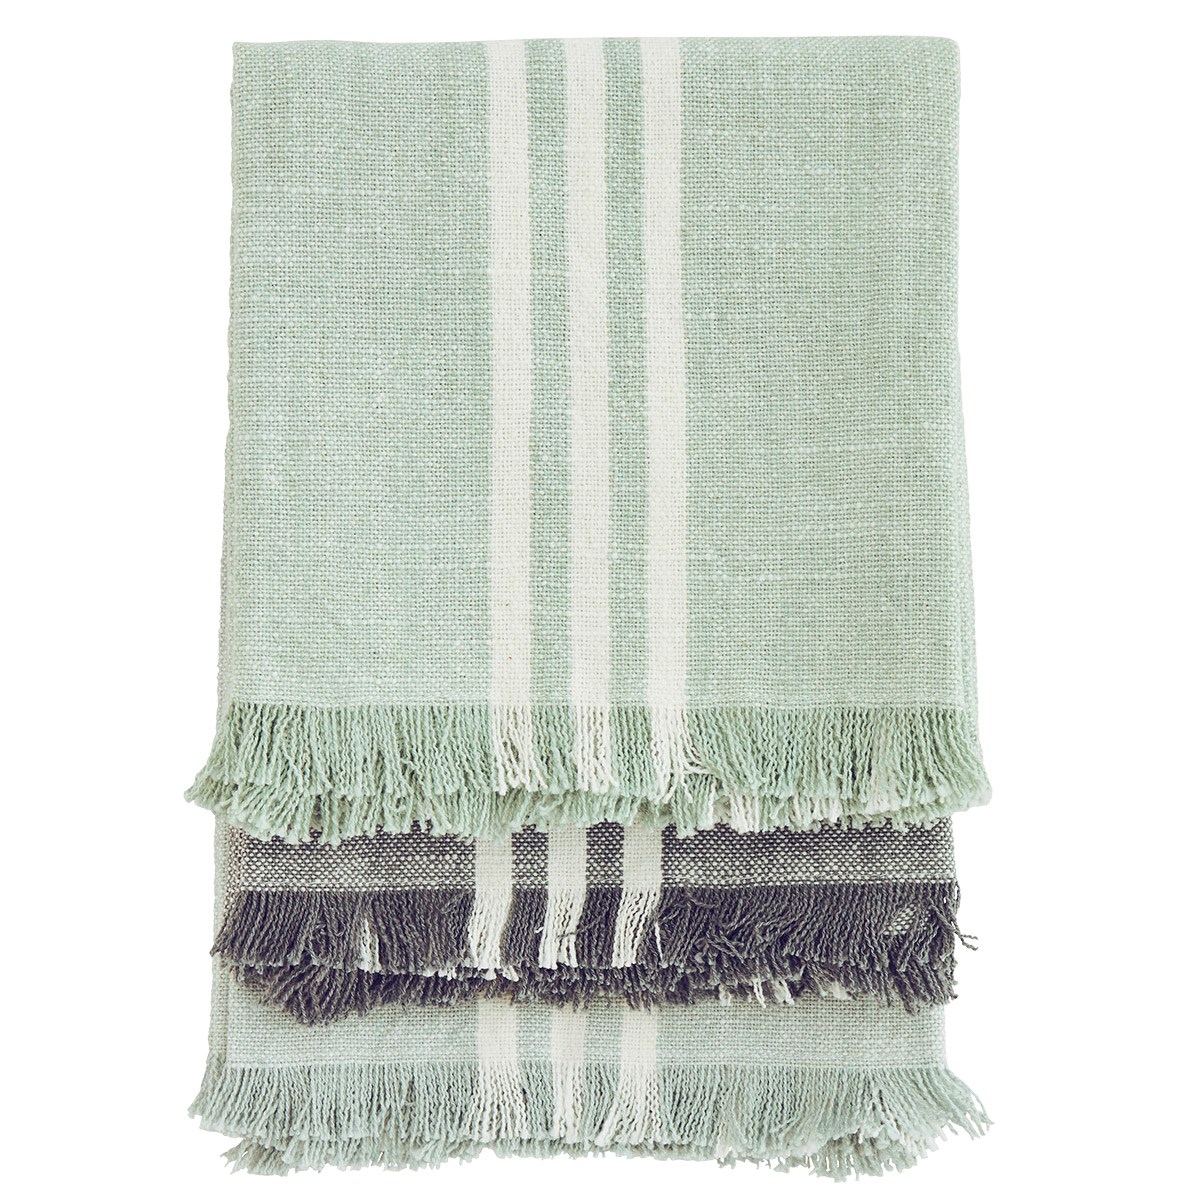 Striped Kitchen Towels 3 Pcs, Aqua/Green/Grey